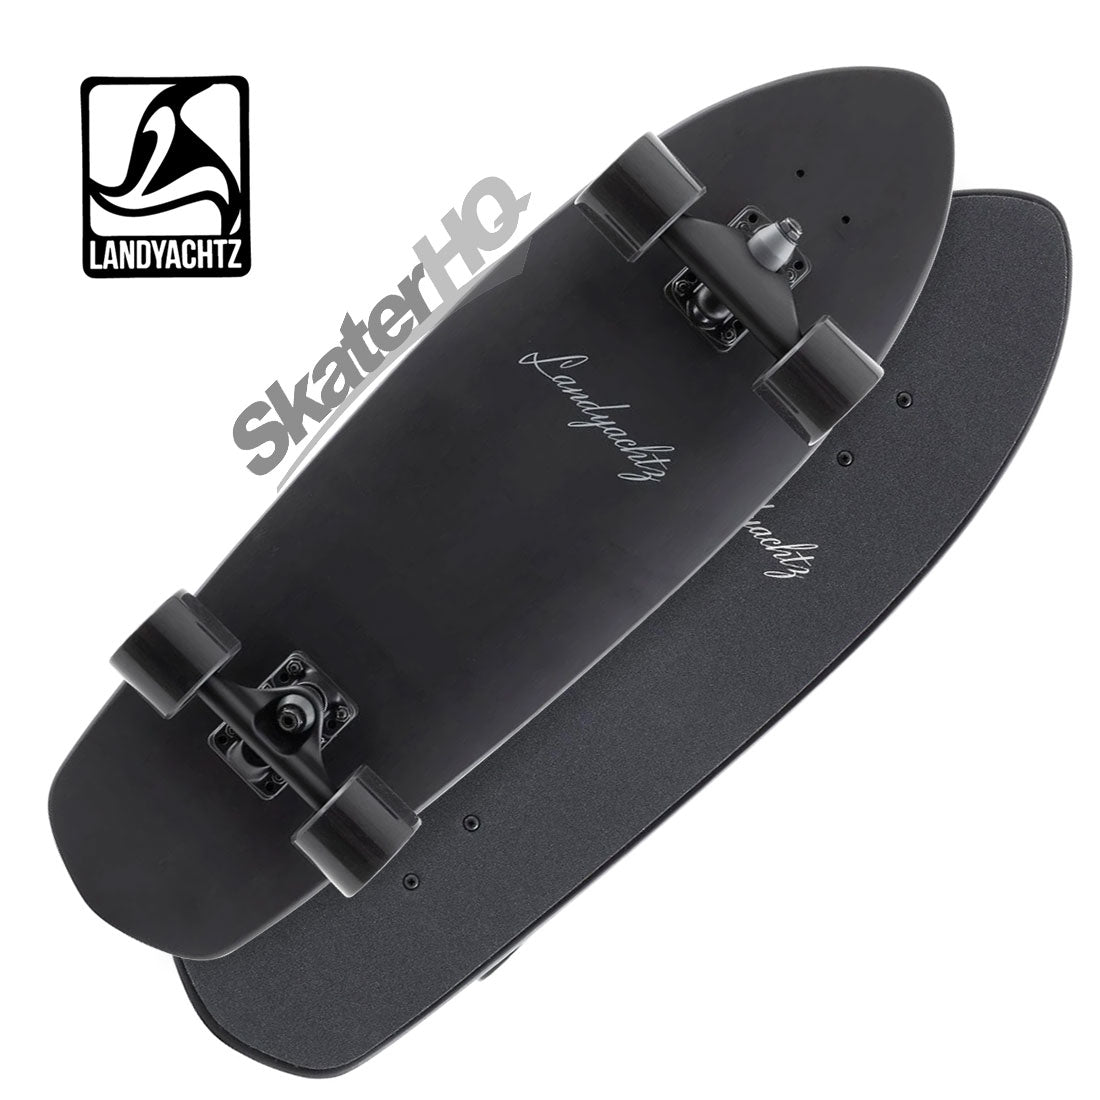 Landyachtz Pocket Knife 29 Surfskate Complete - Black Skateboard Compl Carving and Specialty